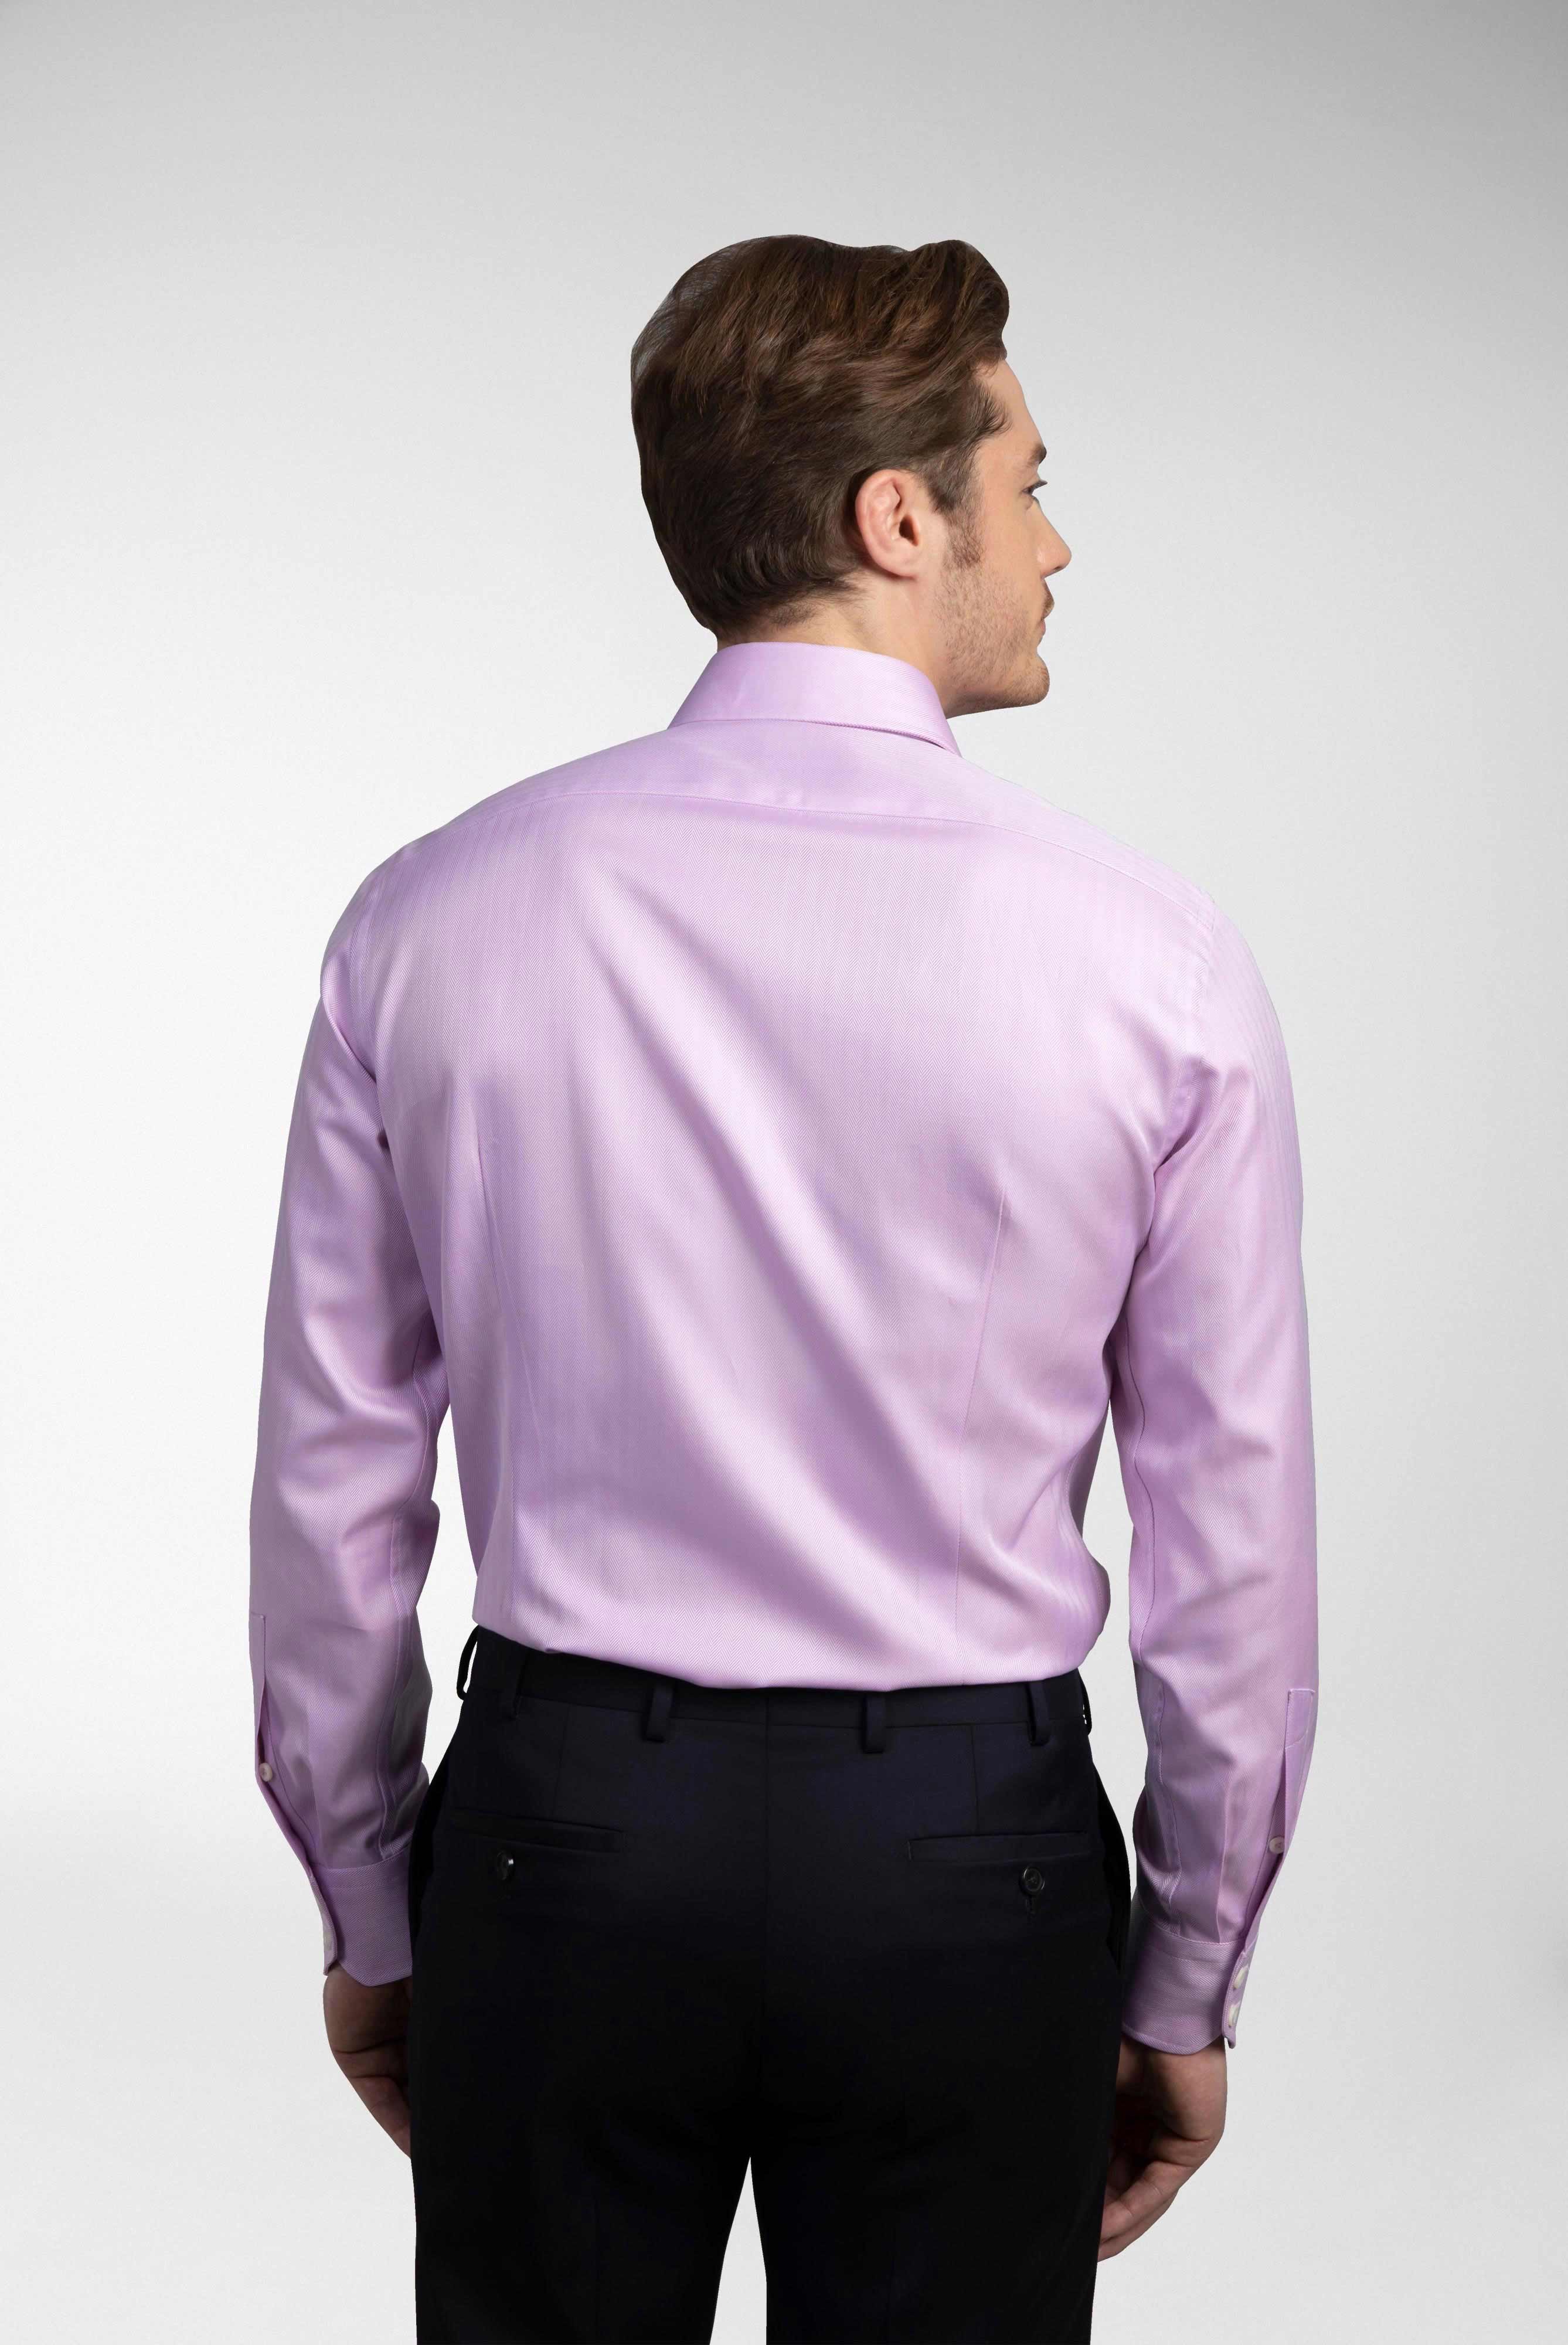 Business Hemden+Twill Hemd mit Fischgrat Tailor Fit+20.2020.AV.102501.610.39